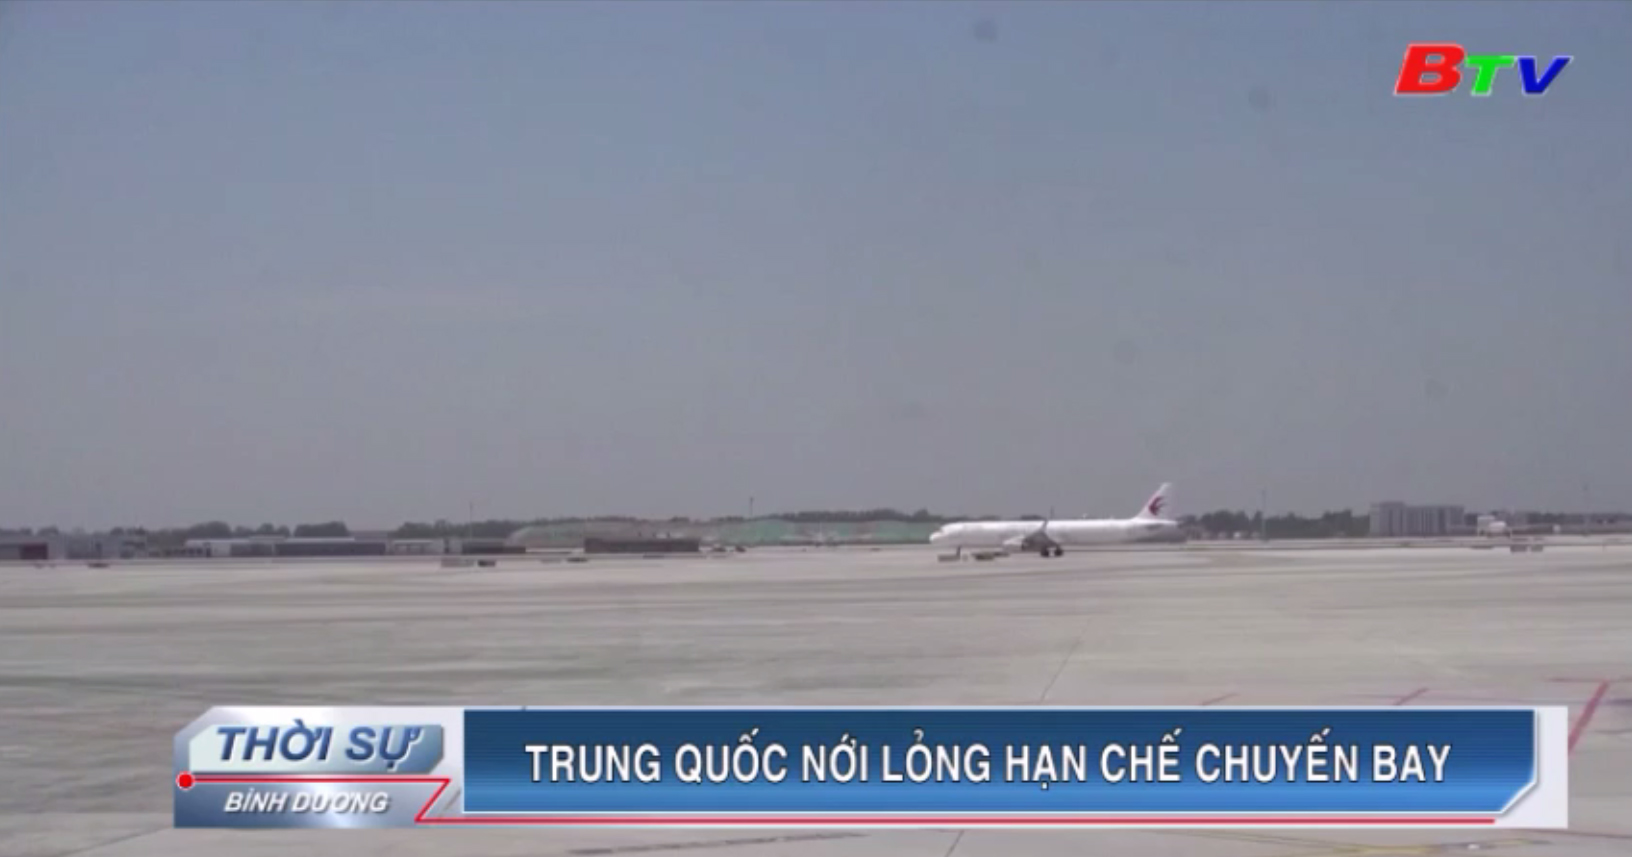 Trung Quốc nới lỏng hạn chế chuyến bay